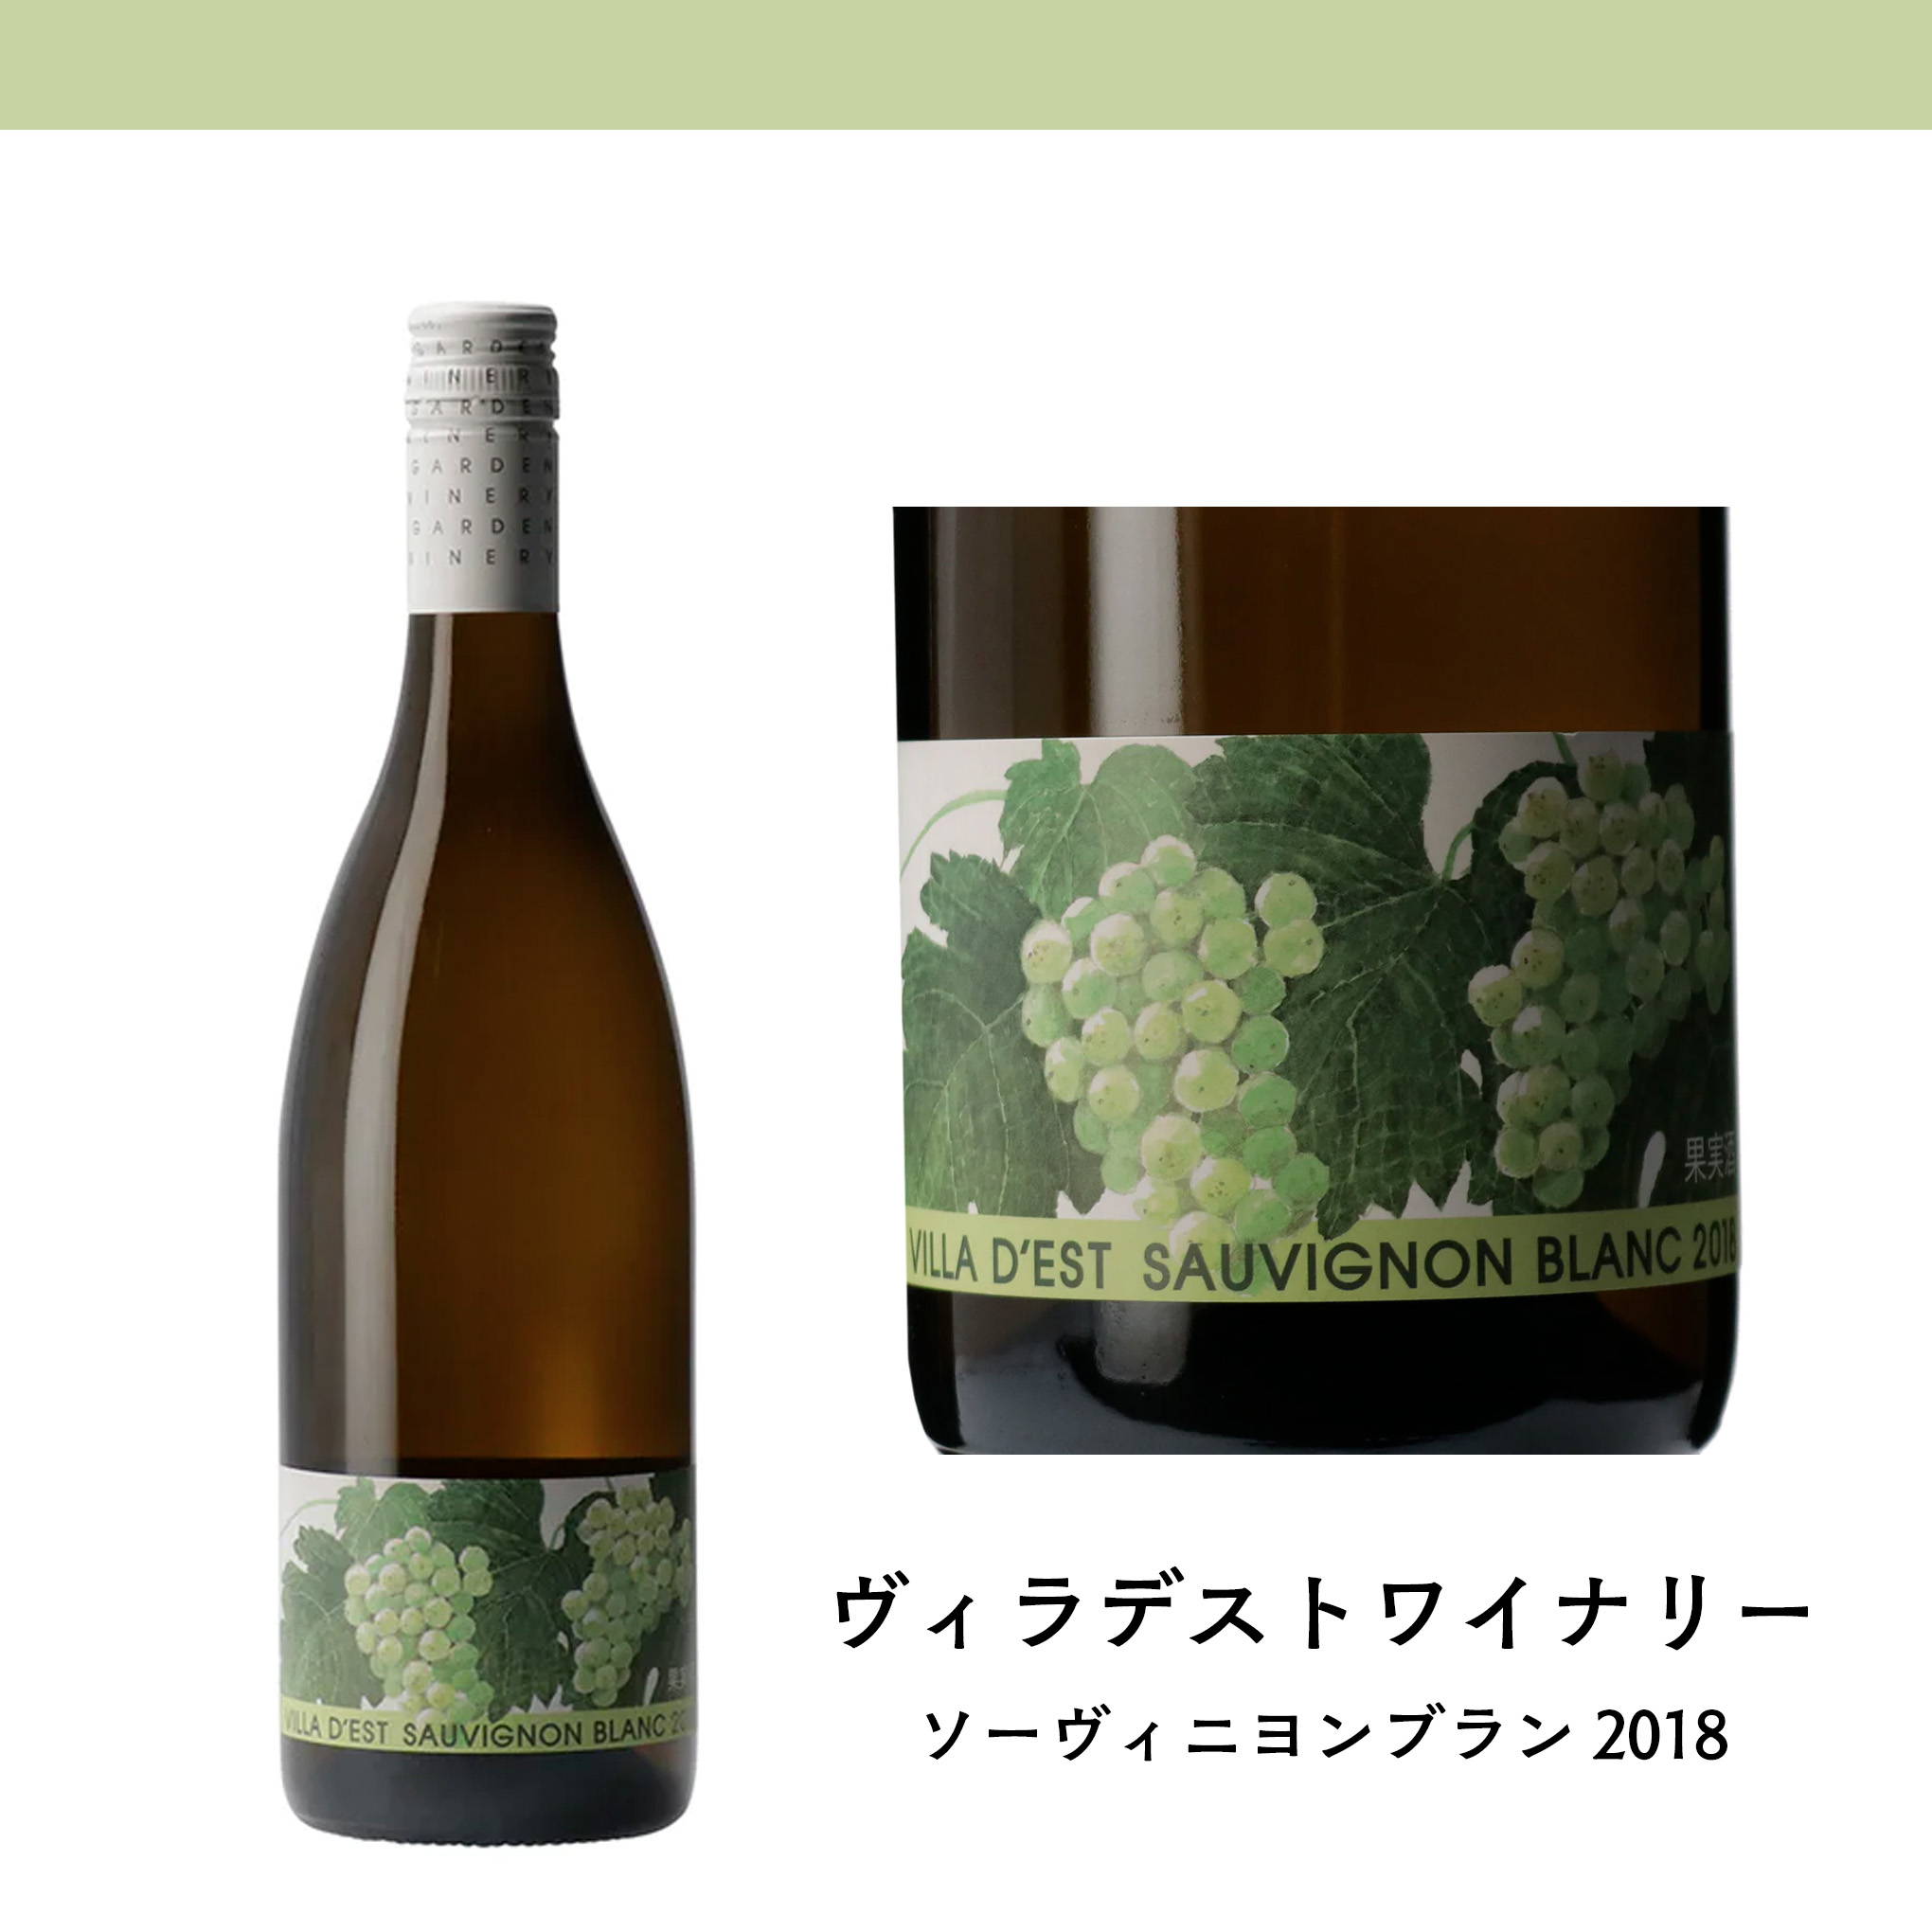 魚介料理とのペアリングがおすすめ！長野の『ヴィラデストワイナリー』が、2008年から栽培を開始した「ソーヴィニヨン・ブラン」を使用した白ワイン。